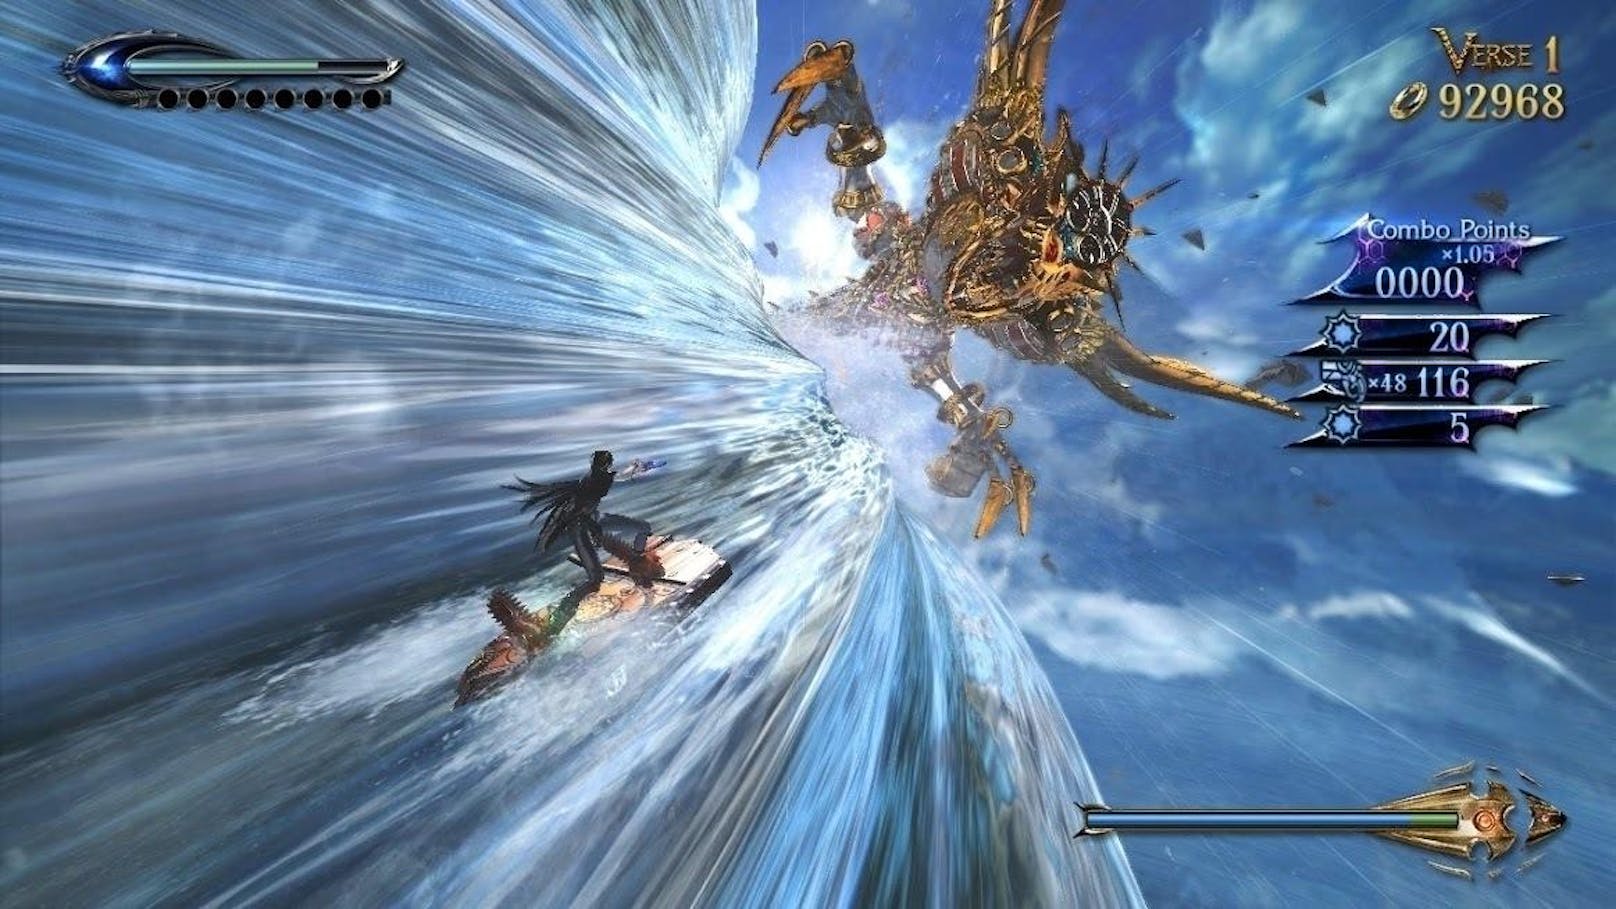 Die Bayonetta-Spiele zeigen PlatinumGames in Höchstform: Abgefahrene Kämpfe, viele Sammelobjekte, Waffen im Überfluss und die verrückten Handlungen sorgen für ein ganz besonderes Spielerlebnis.